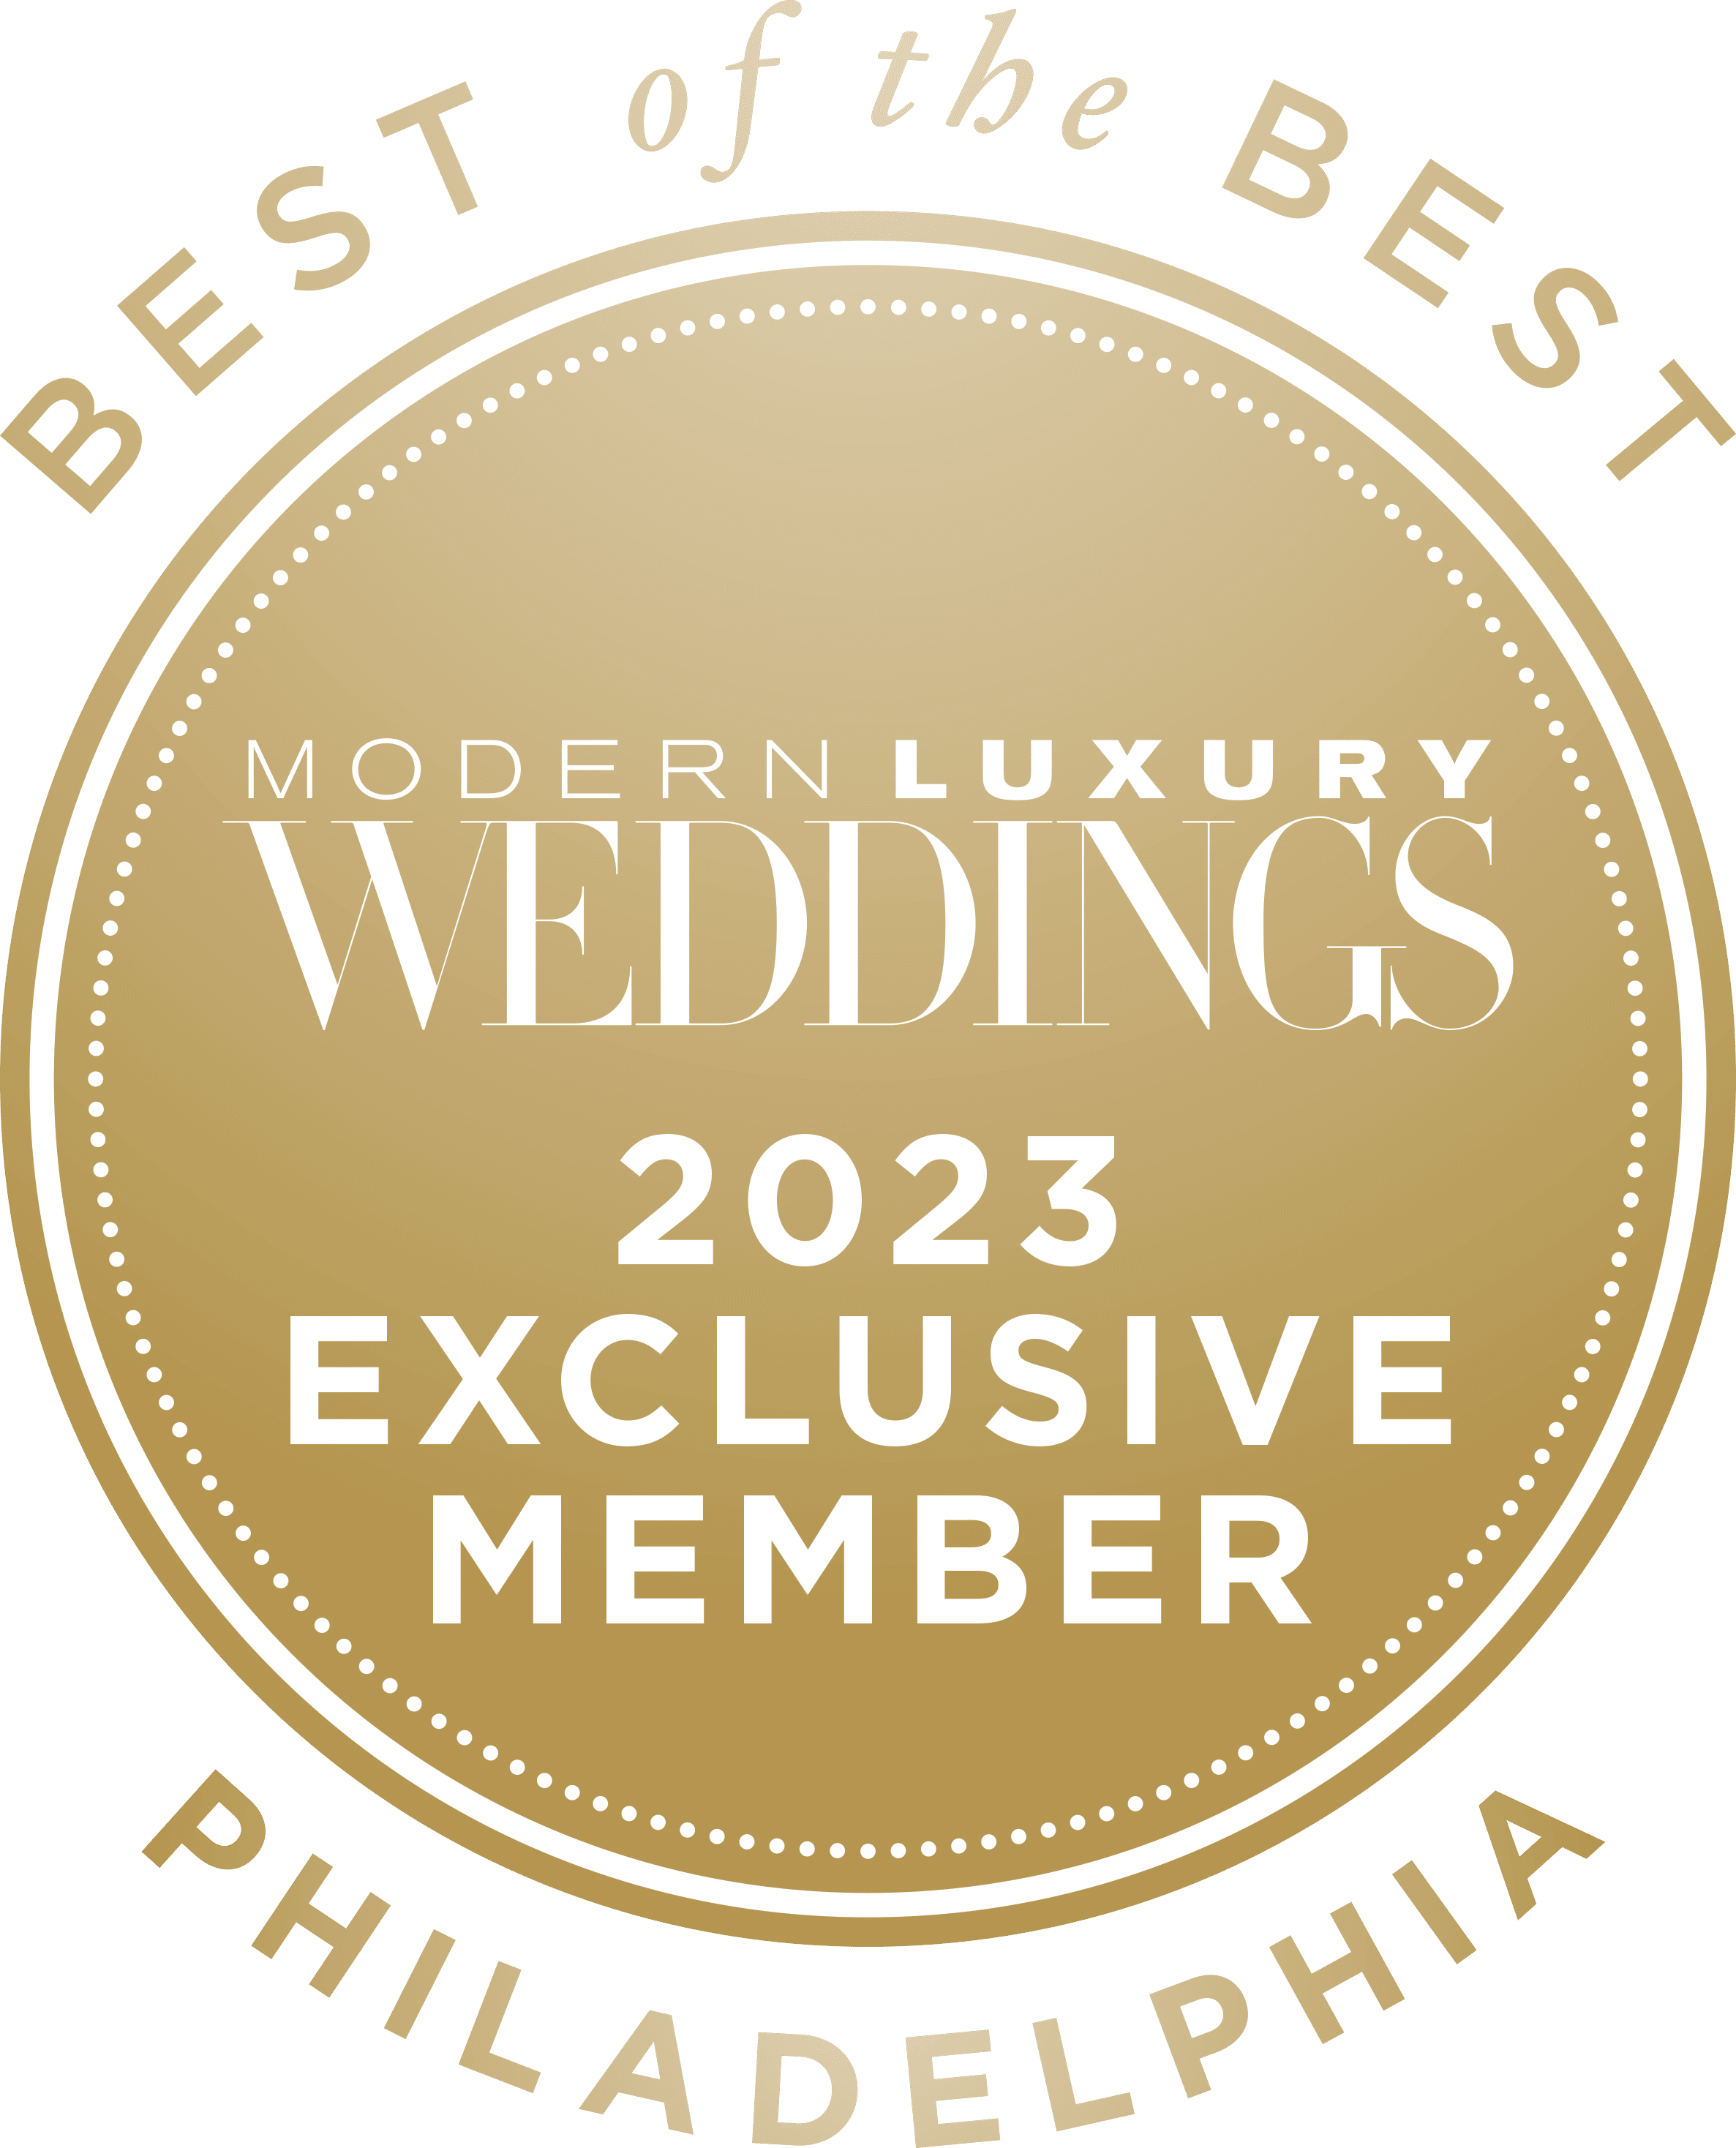 Modern Luxury Weddings Philadelphia 2023 Best of the Best